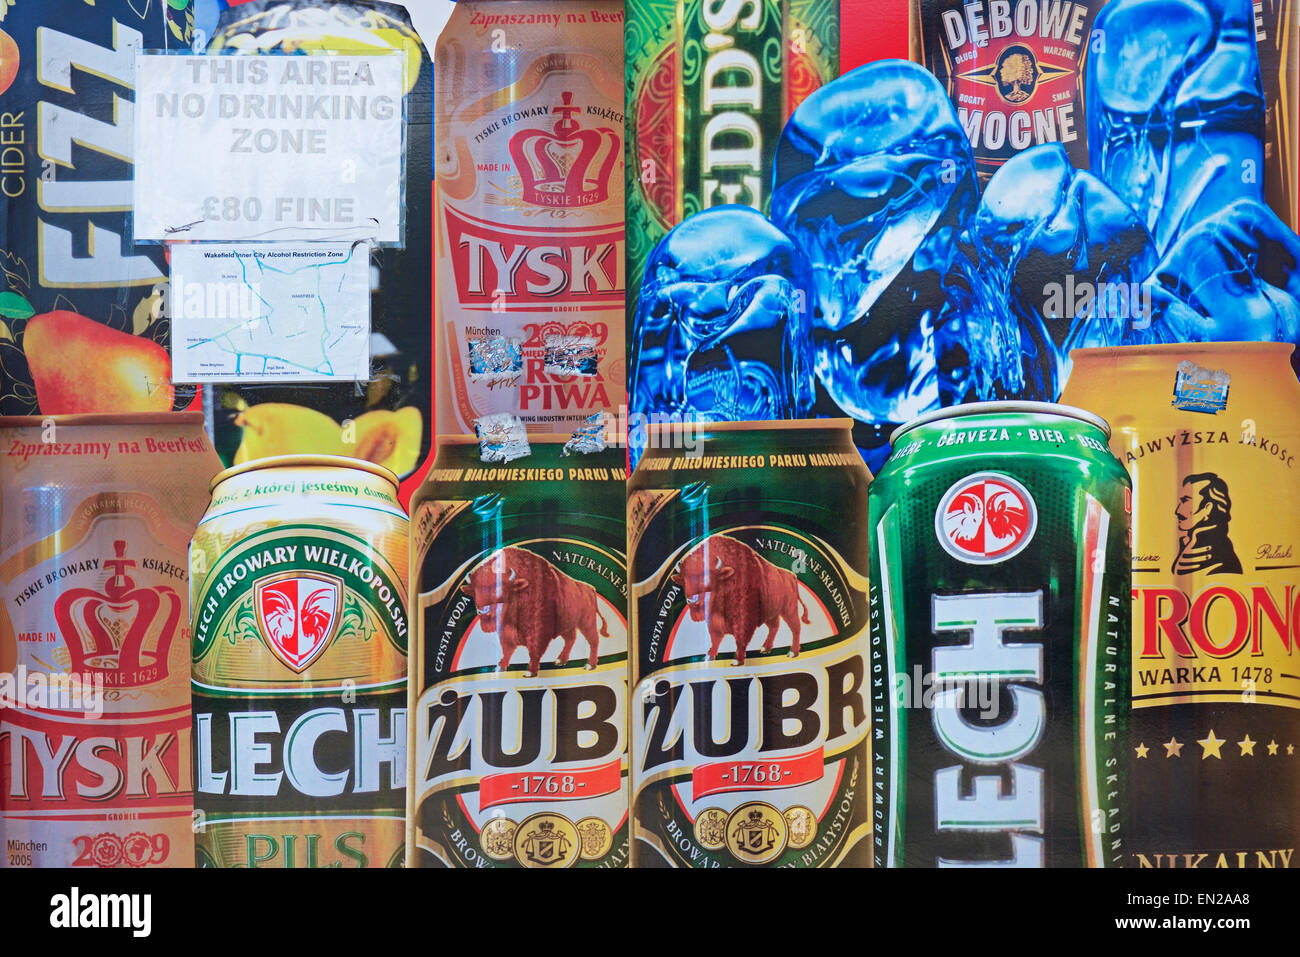 Zeichen für keine trinken Zone auf Bier Werbung, England UK Stockfoto